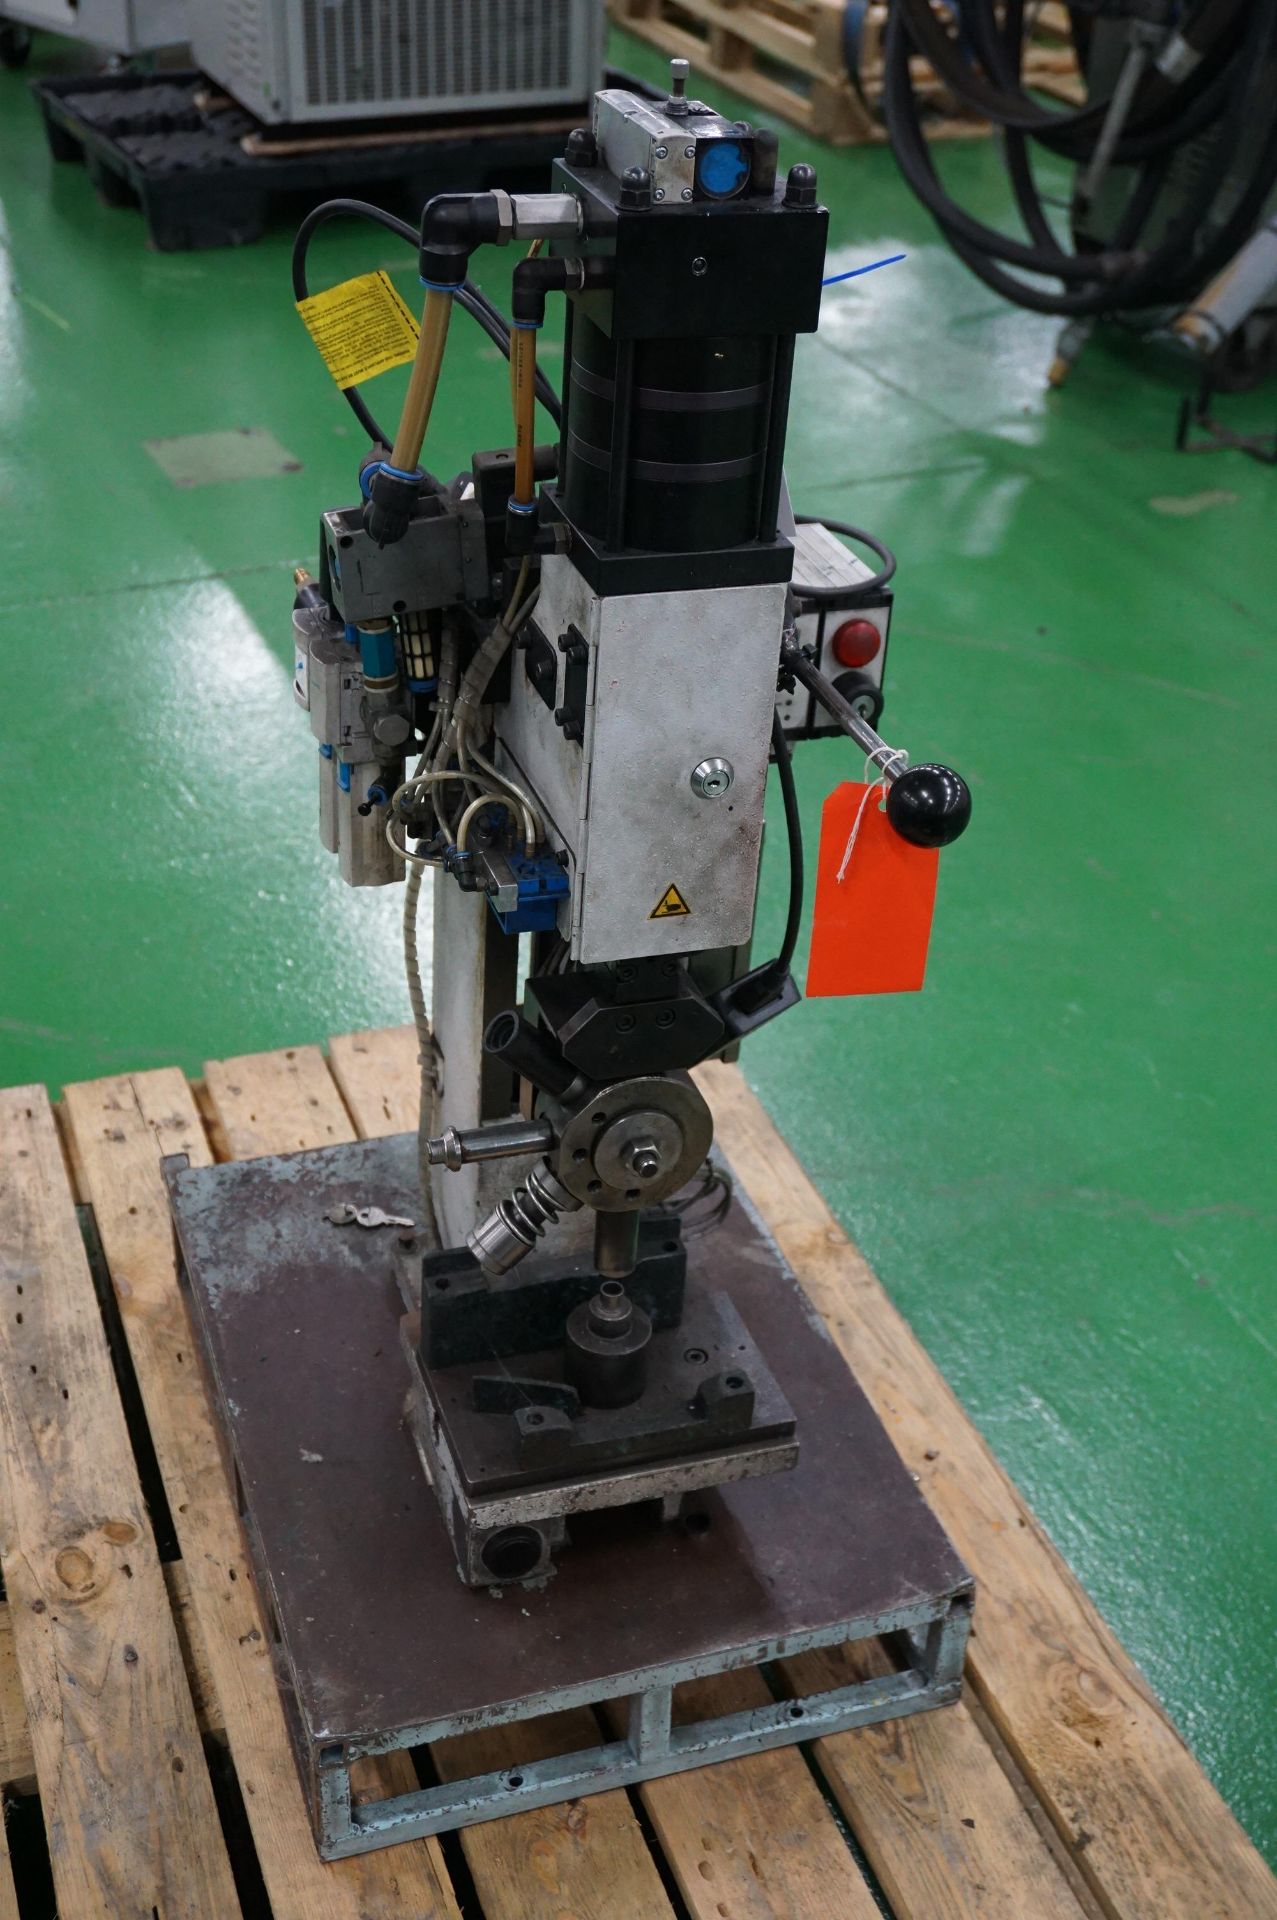 Gechter 12 Kn HKPL MS rotary head press